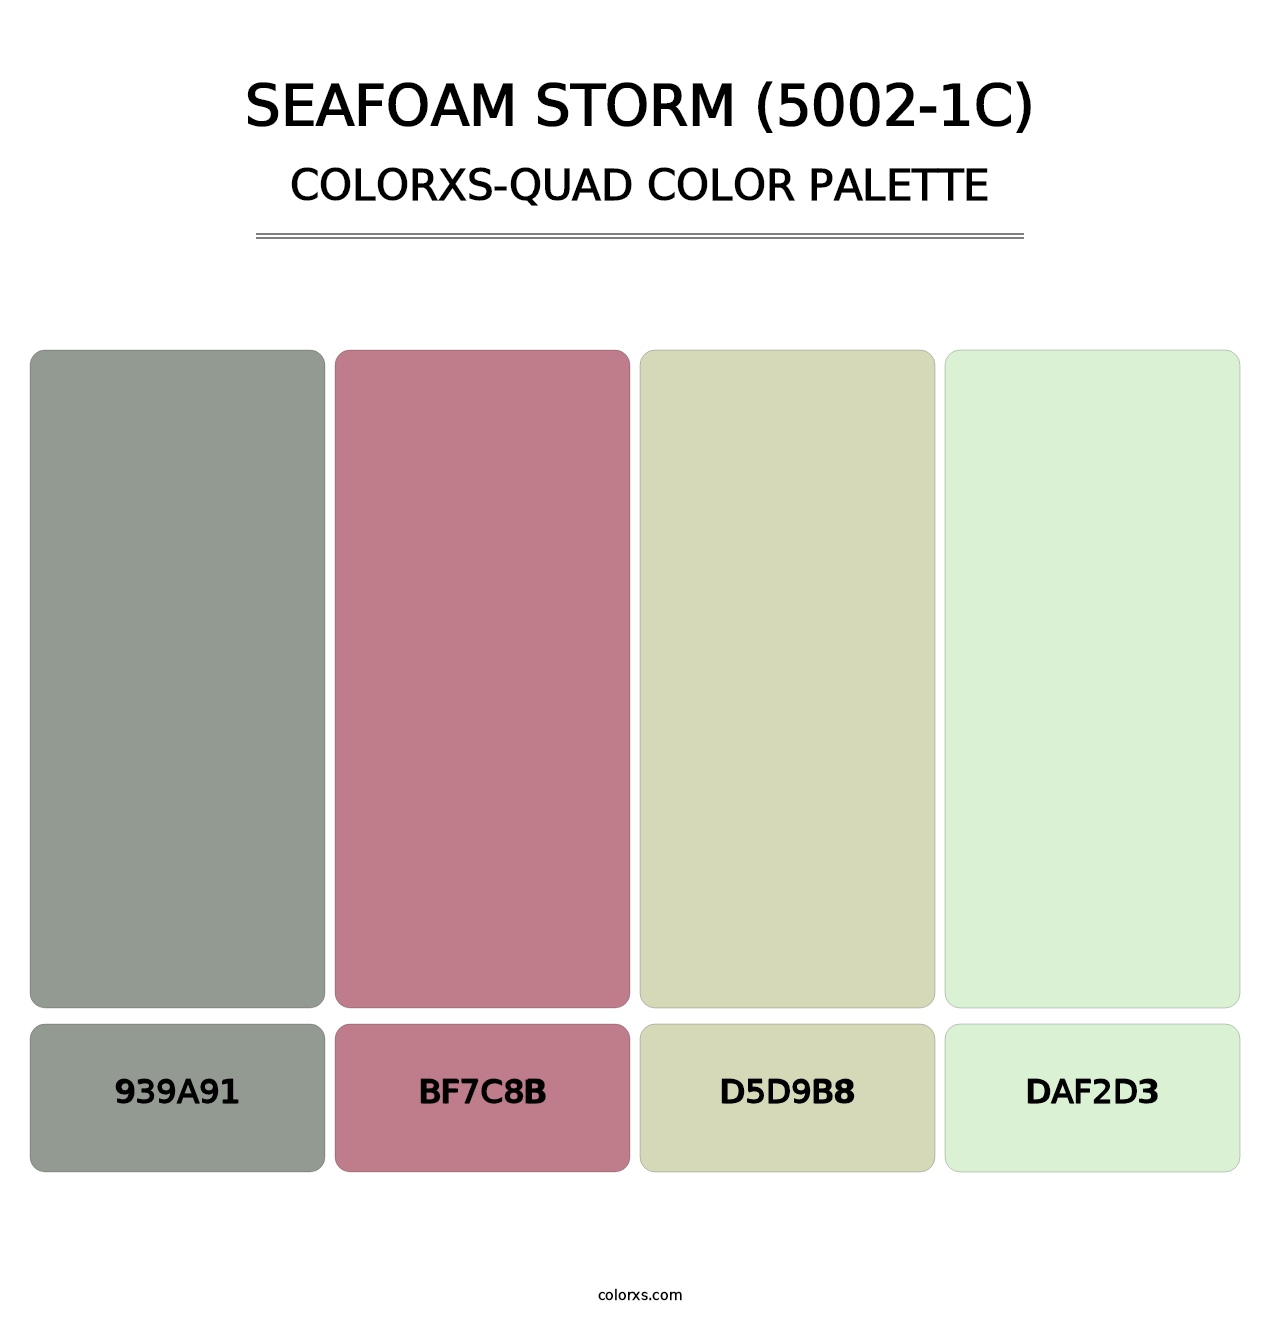 Seafoam Storm (5002-1C) - Colorxs Quad Palette